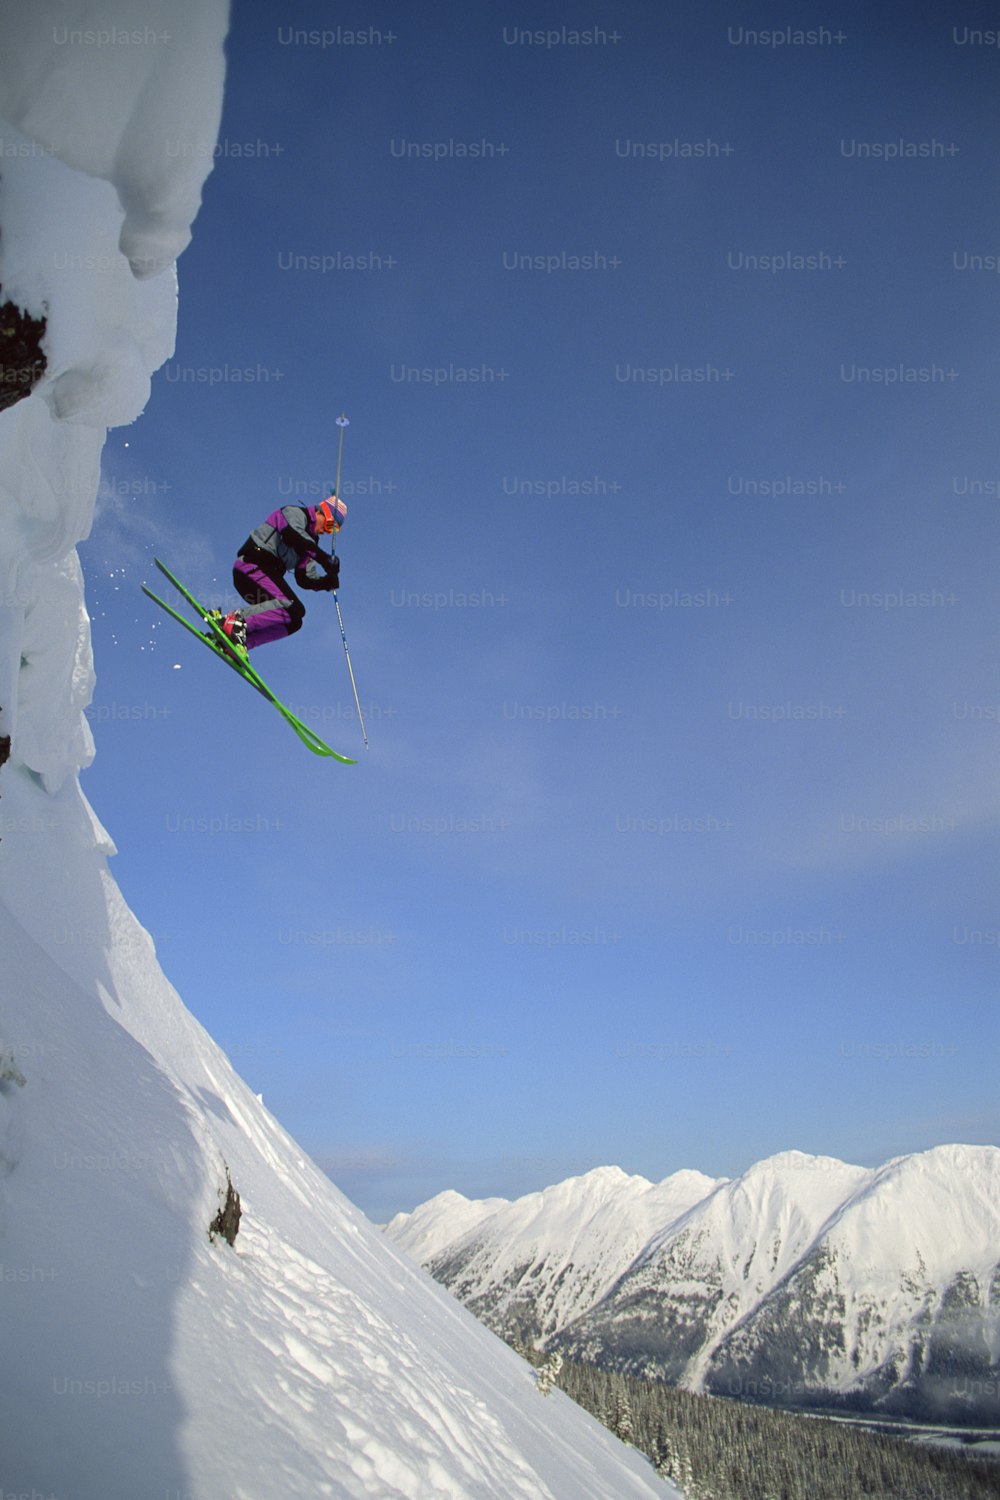 스키 한 켤레를 타고 �공중으로 점프하는 사람